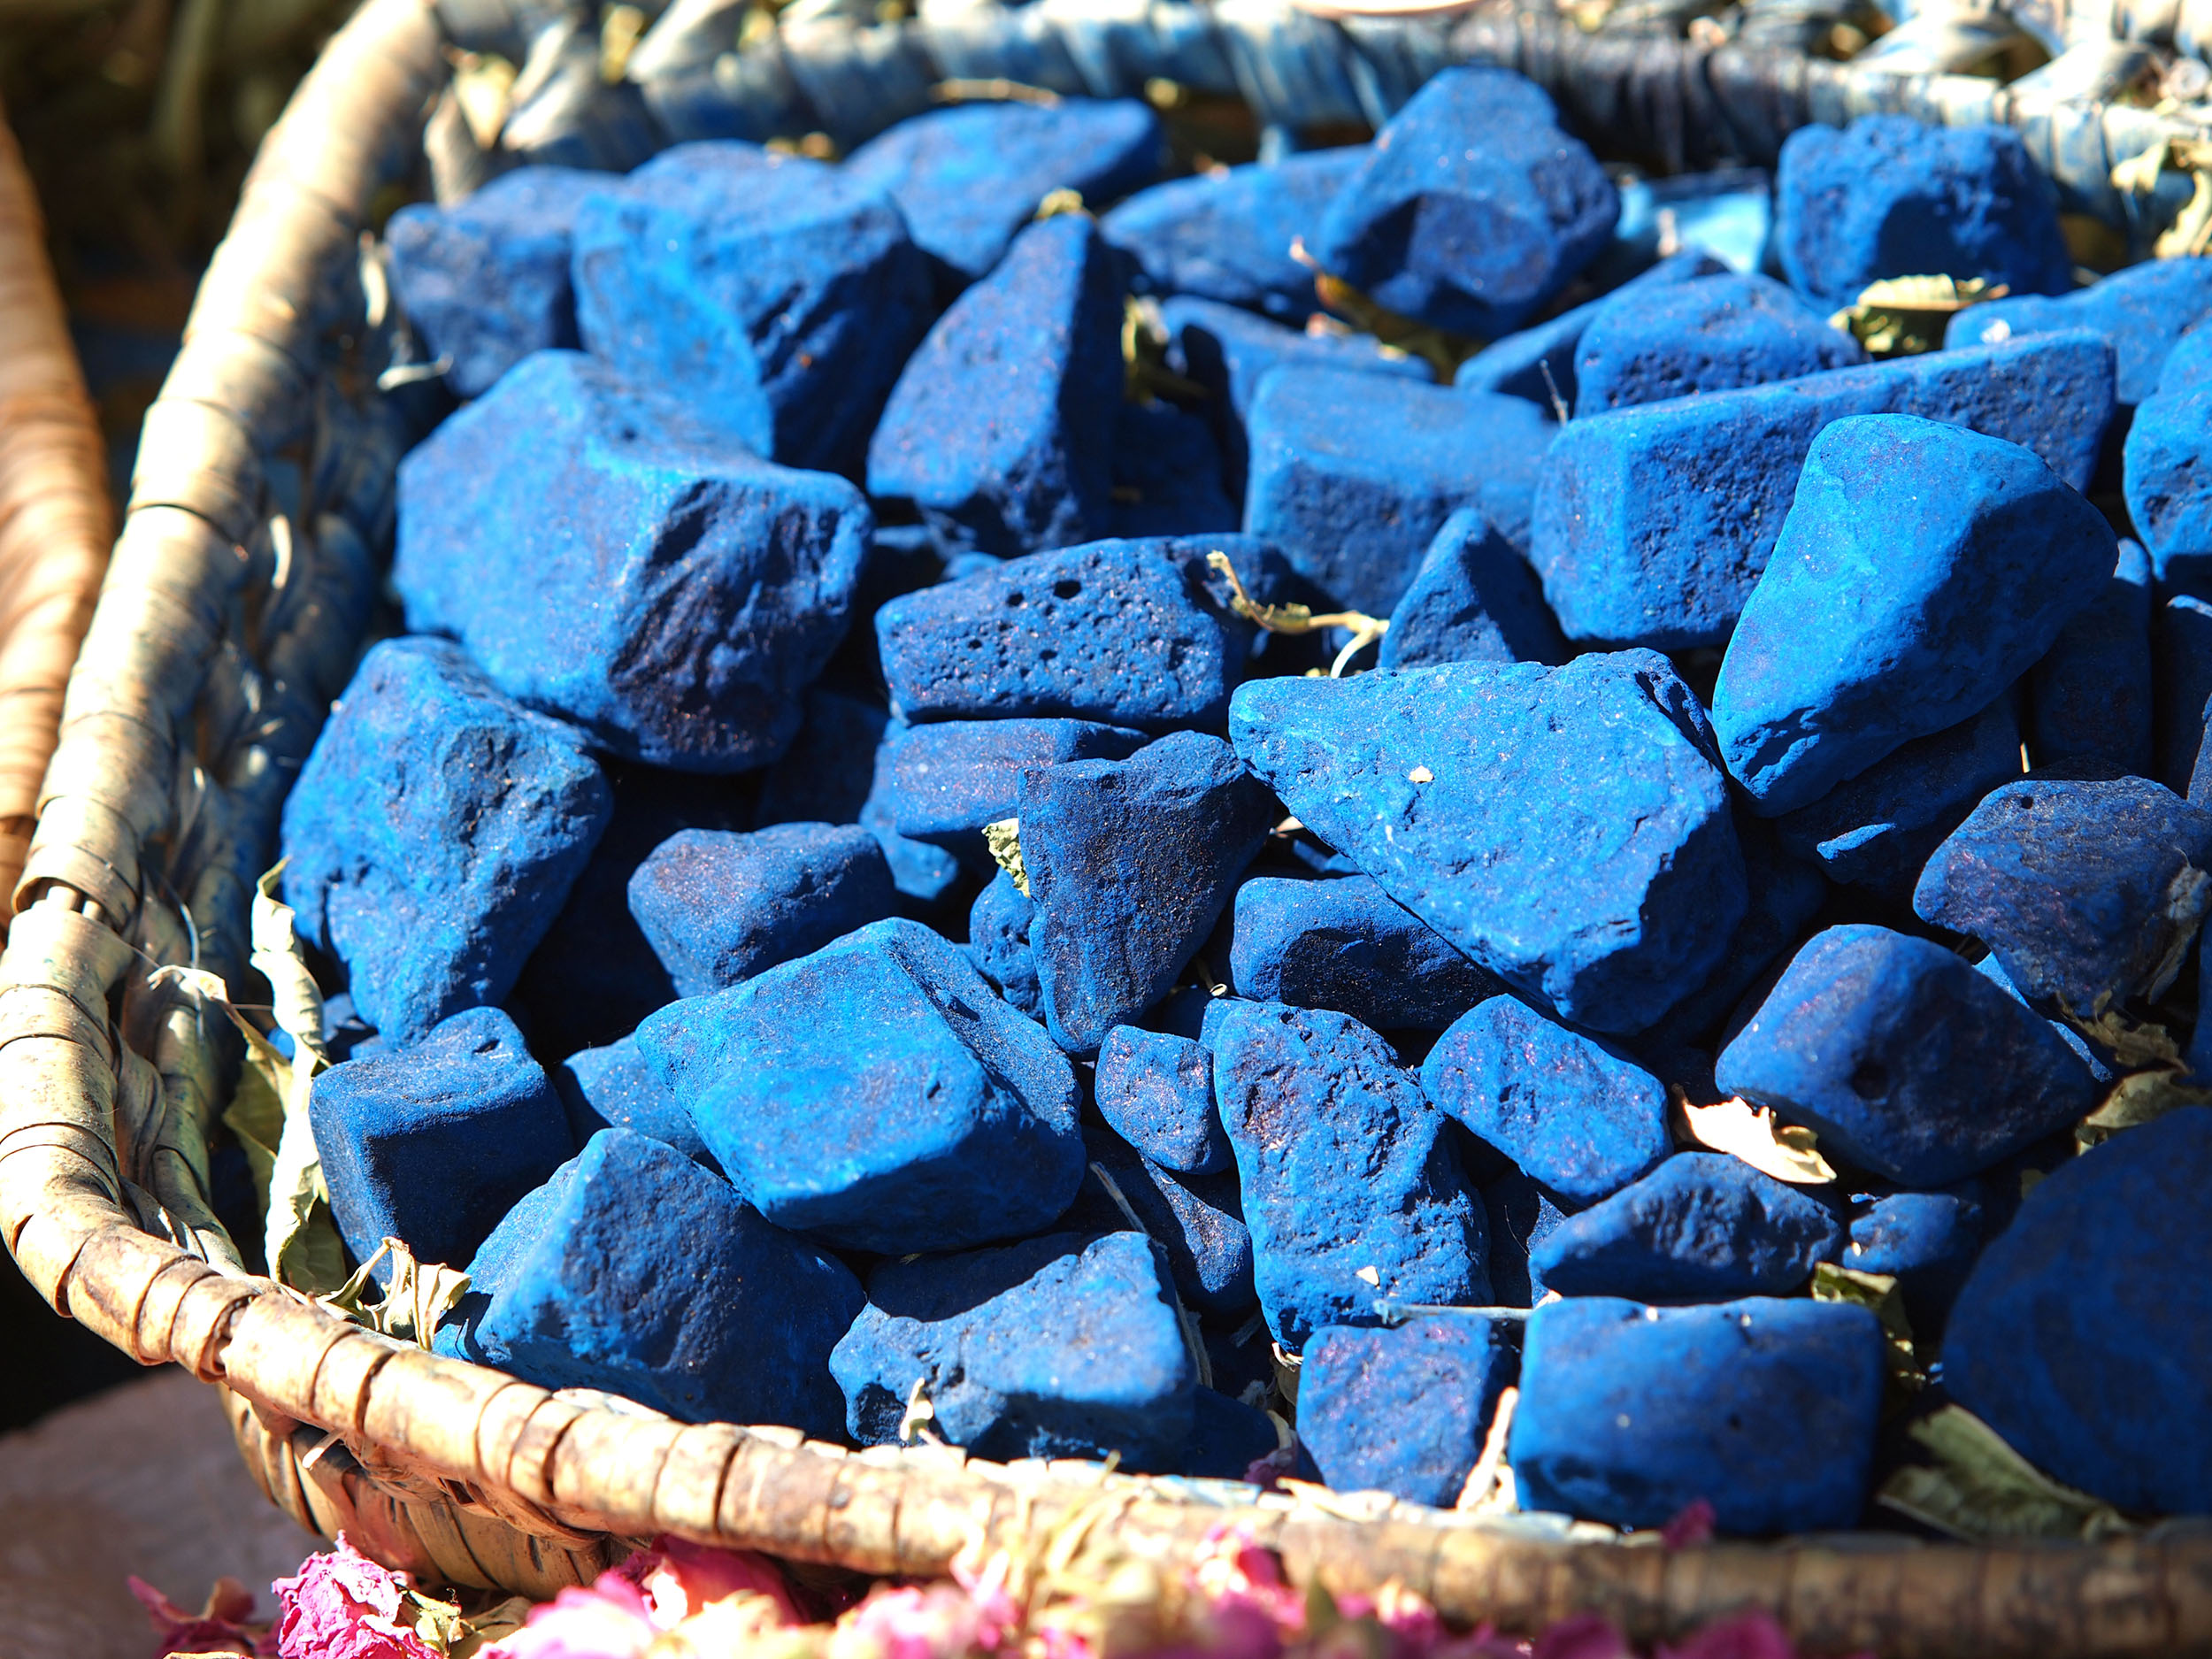 Indigo blaue Steine